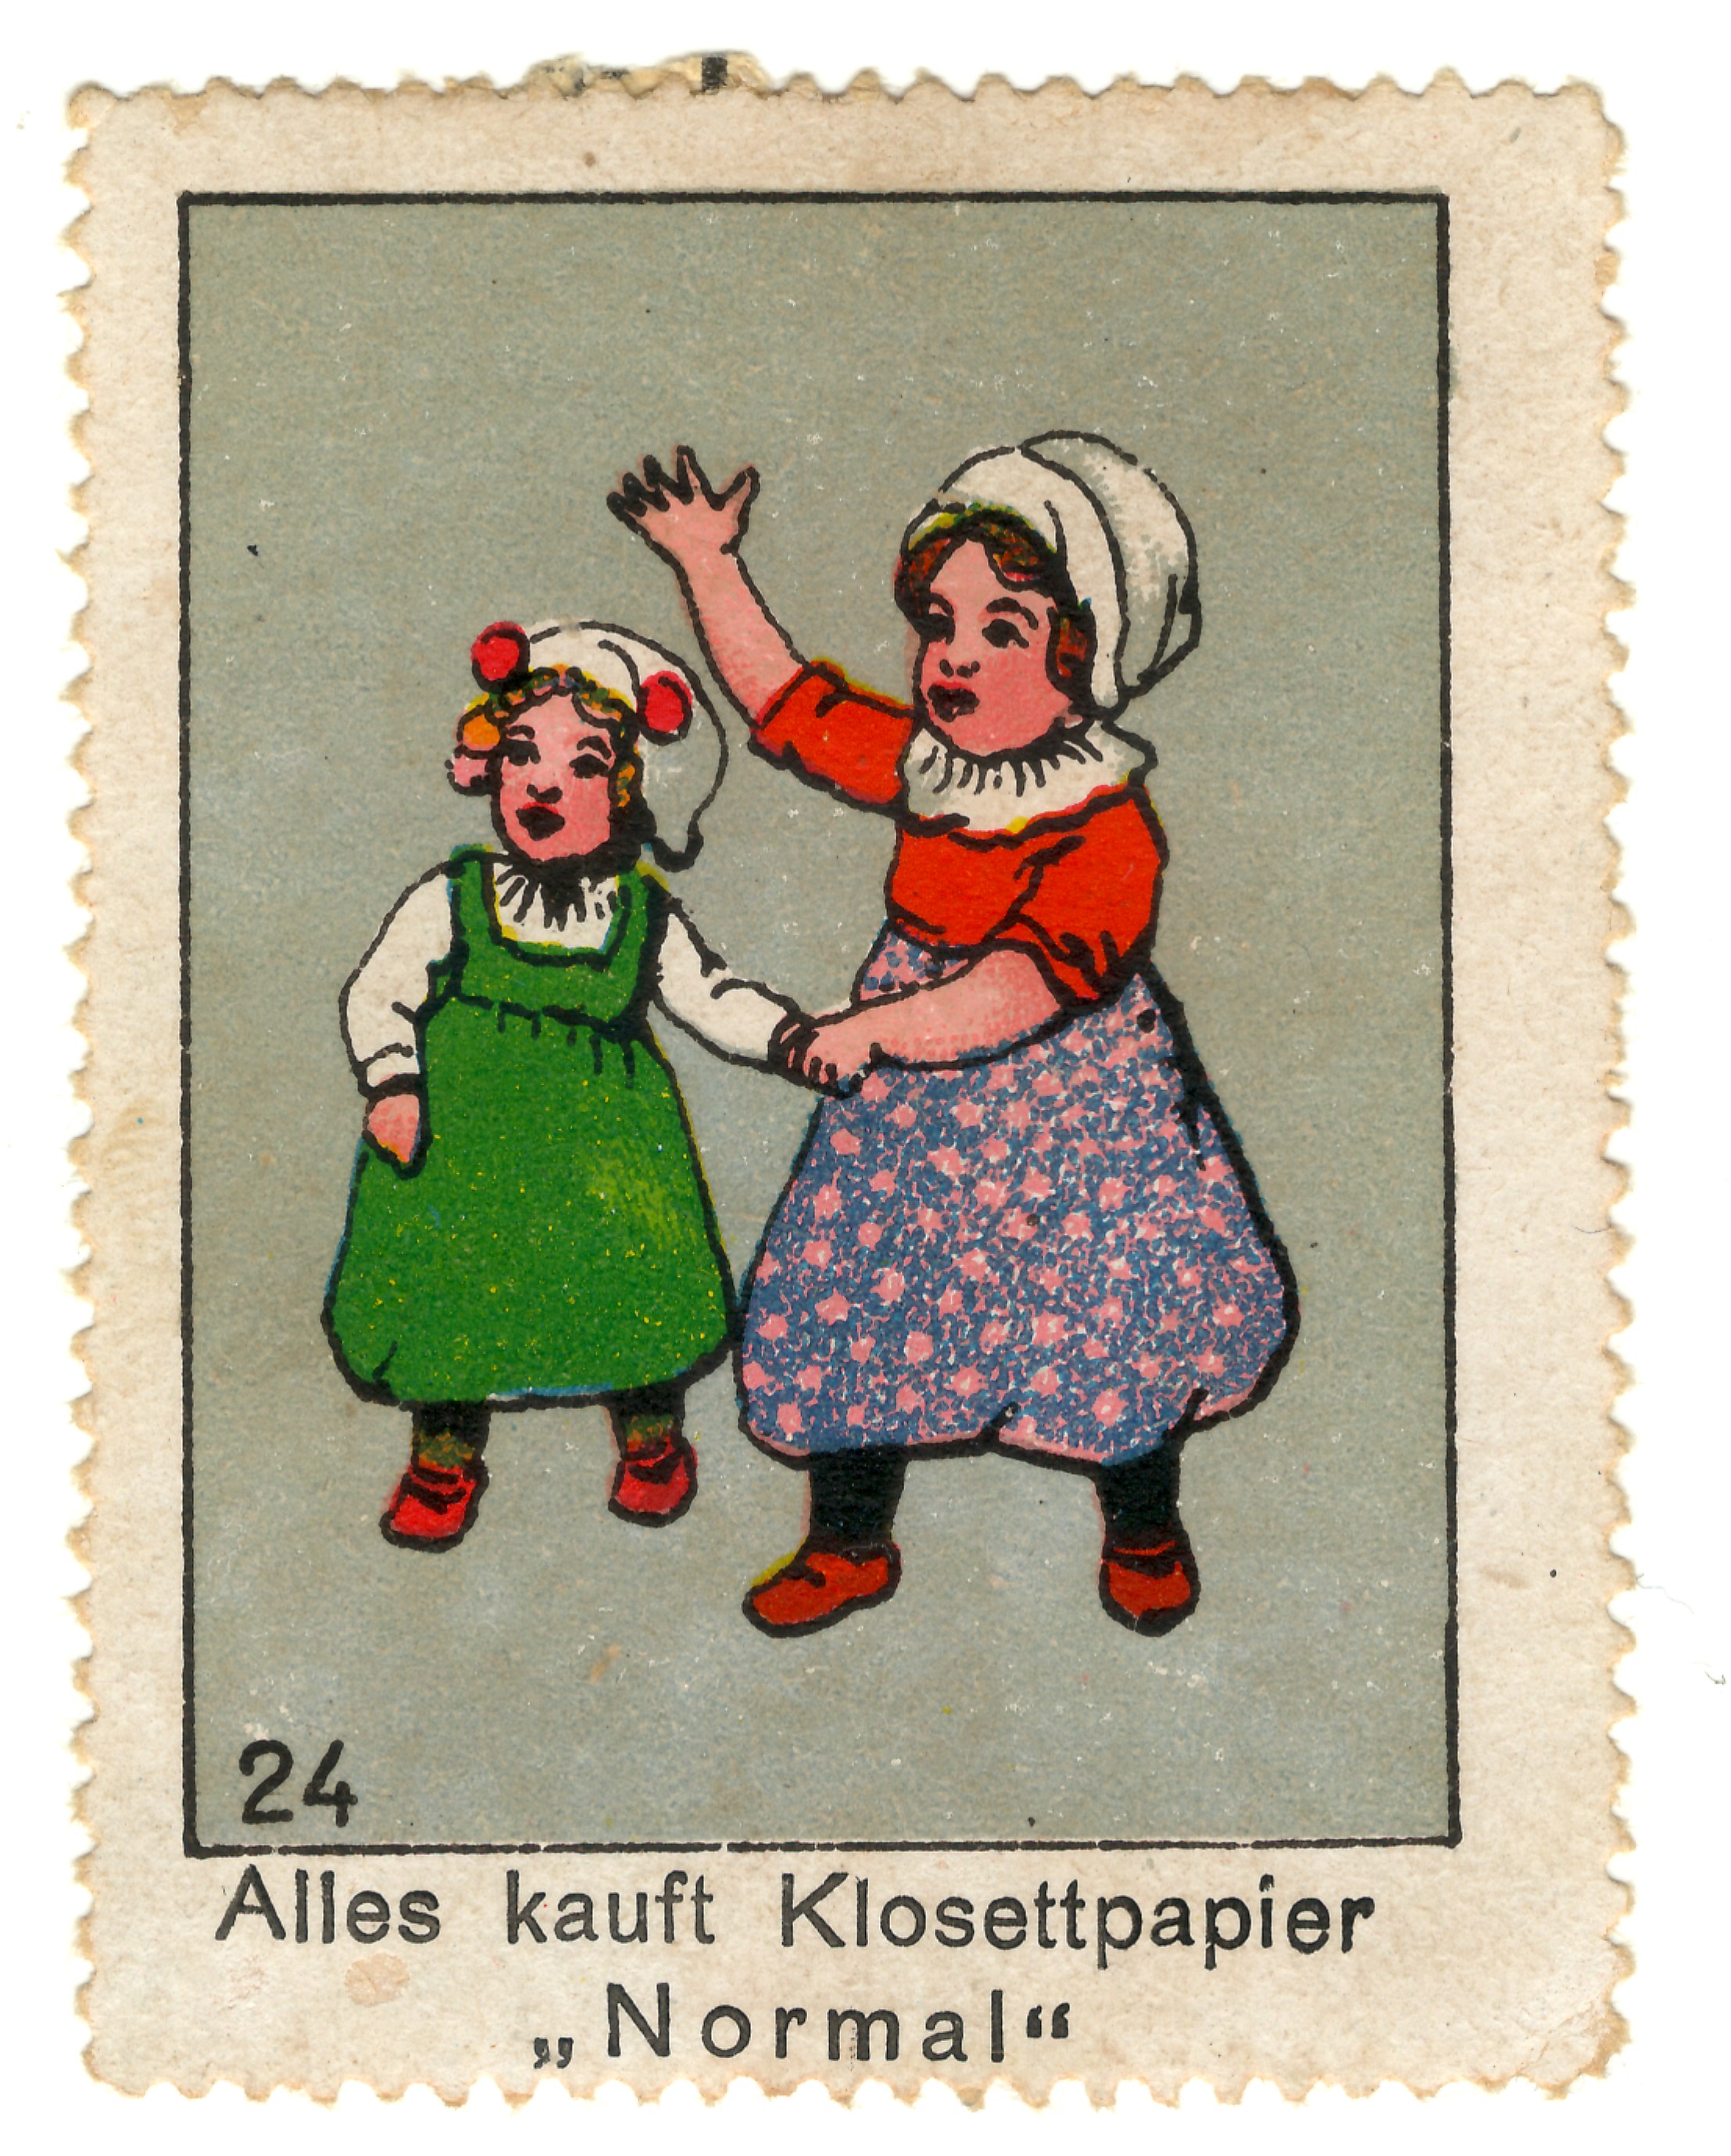 Auf dieser Briefmarke steht der Slogan „Alles kauft Klosettpapier“ unter einem Bild winkender Kinder.